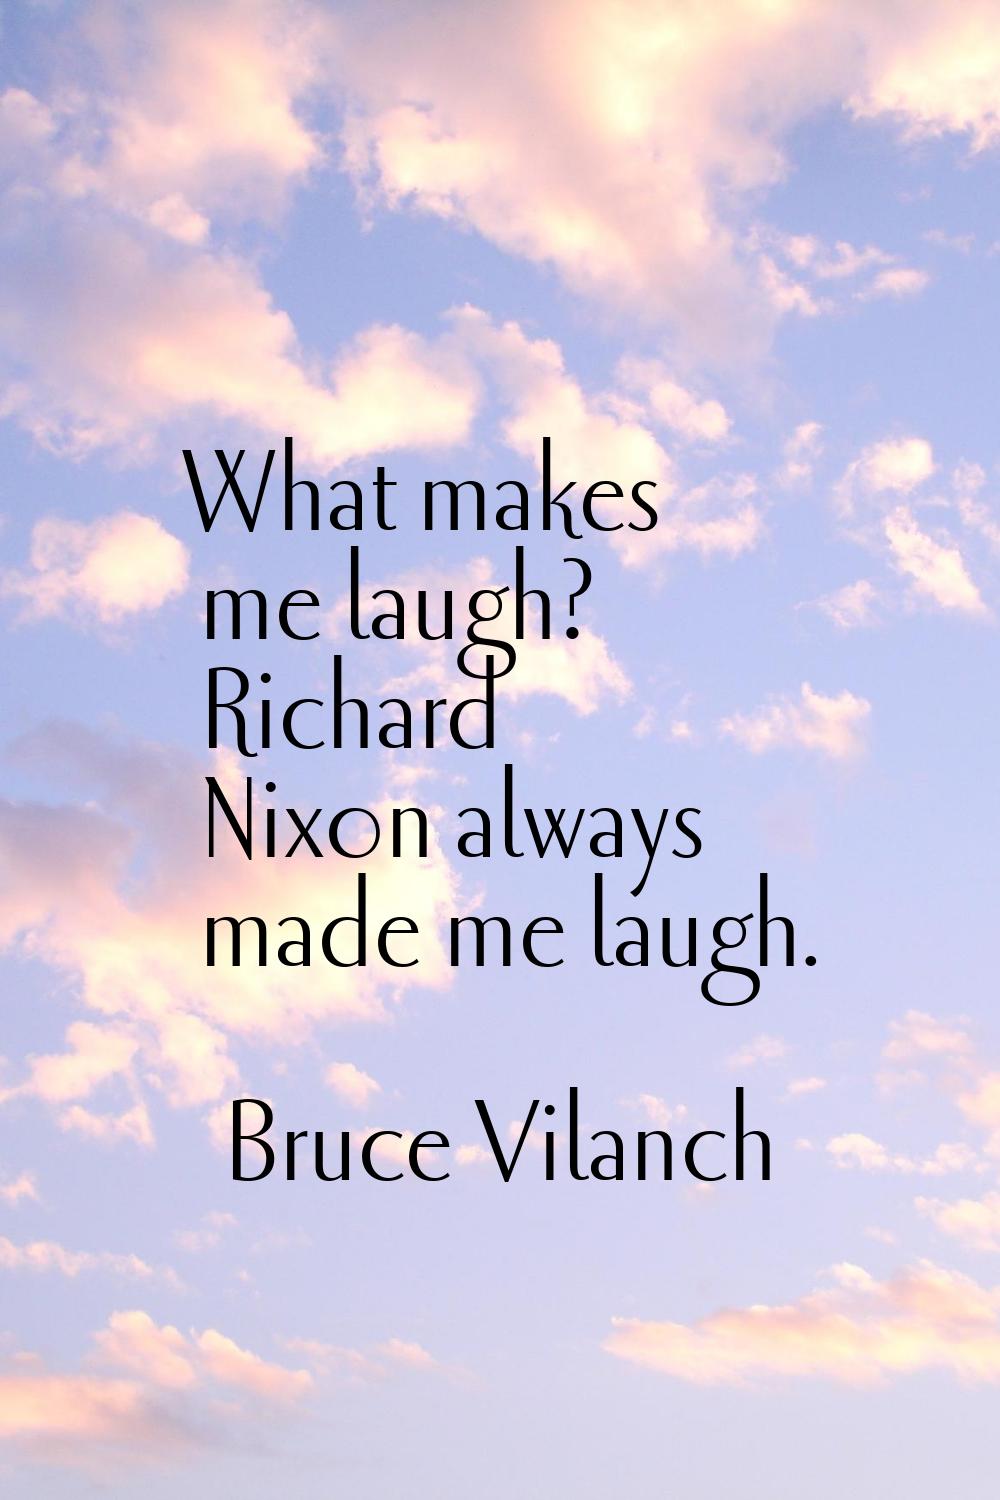 What makes me laugh? Richard Nixon always made me laugh.